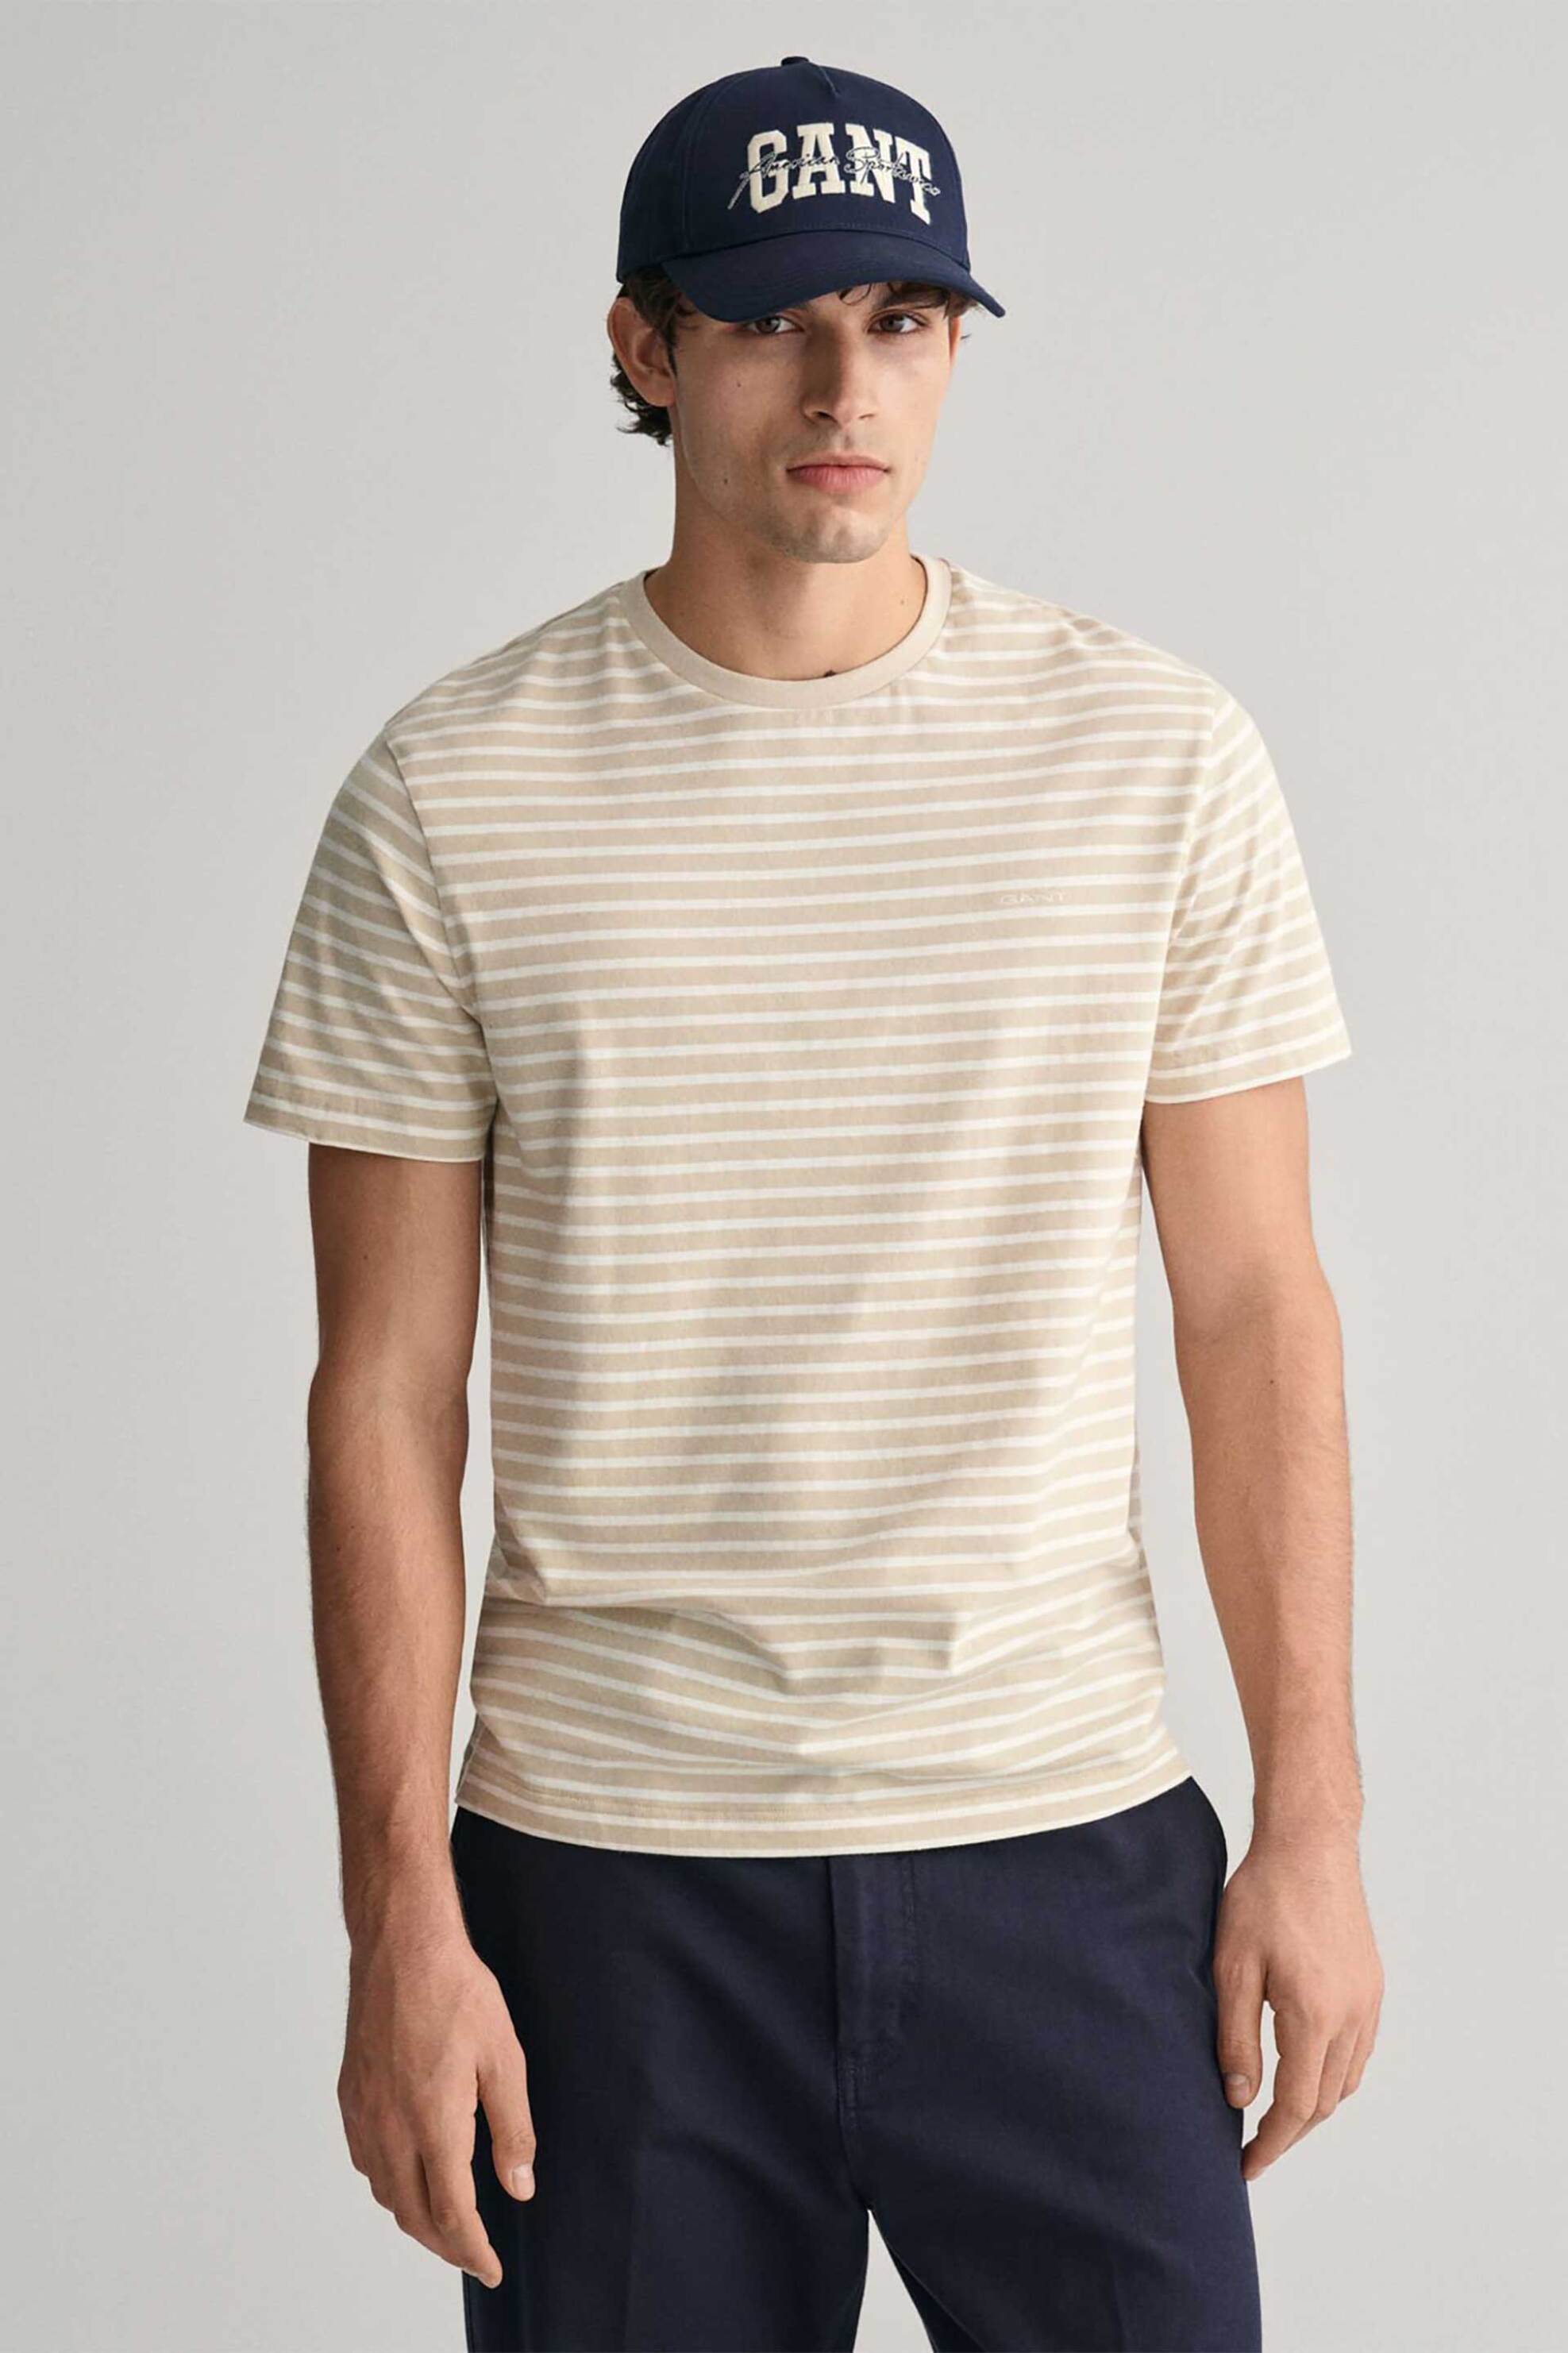 Ανδρική Μόδα > Ανδρικά Ρούχα > Ανδρικές Μπλούζες > Ανδρικά T-Shirts Gant ανδρικό T-shirt με ριγέ σχέδιο και λογότυπο Regular Fit - 2013037 Κίτρινο